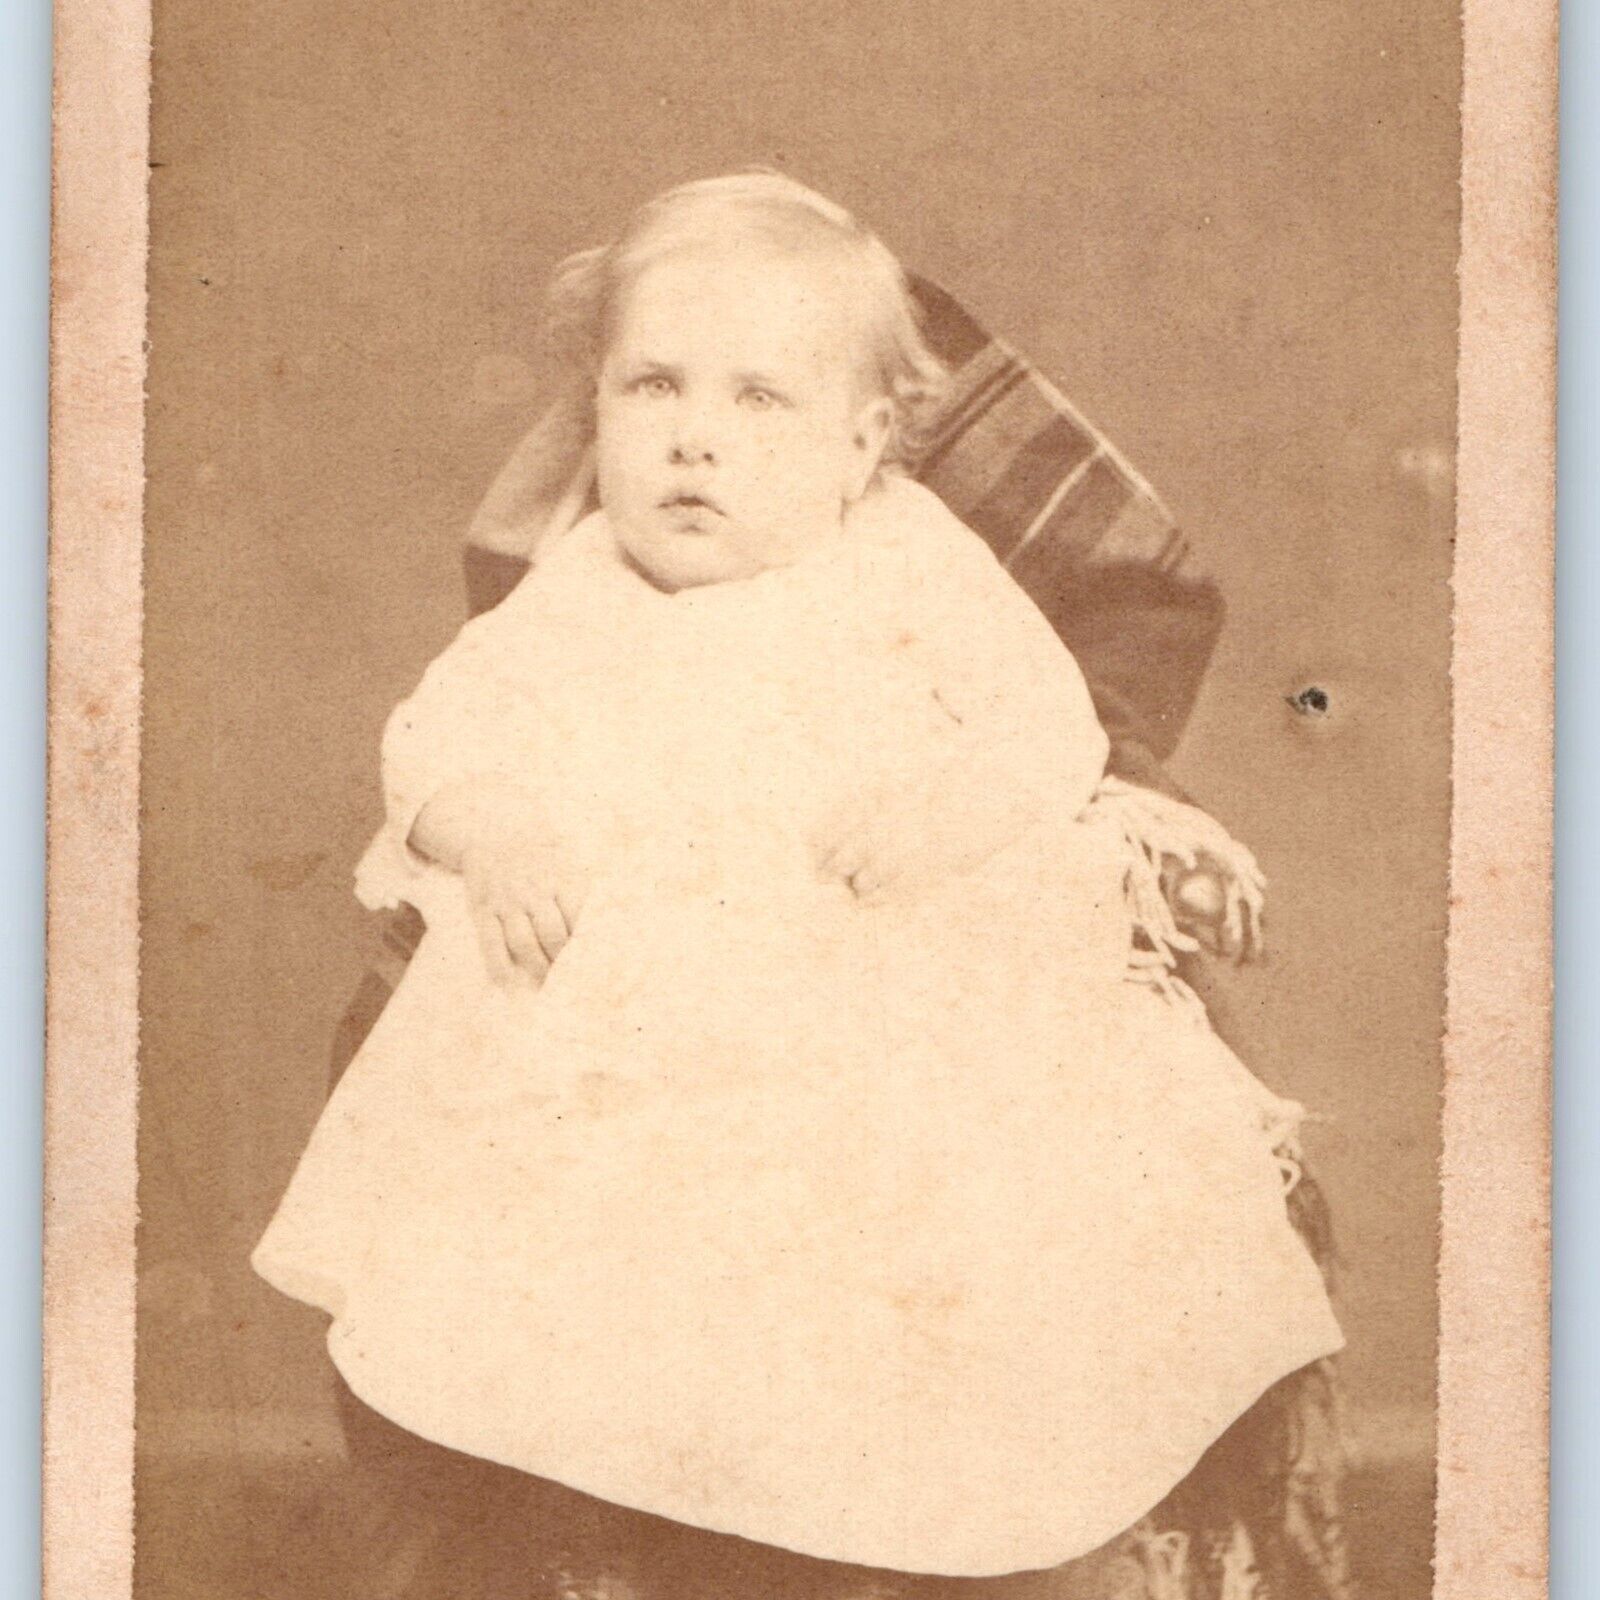 c1870s Cute Baby Boy Sitting Chair White Dress CdV Photo Card Antique H27